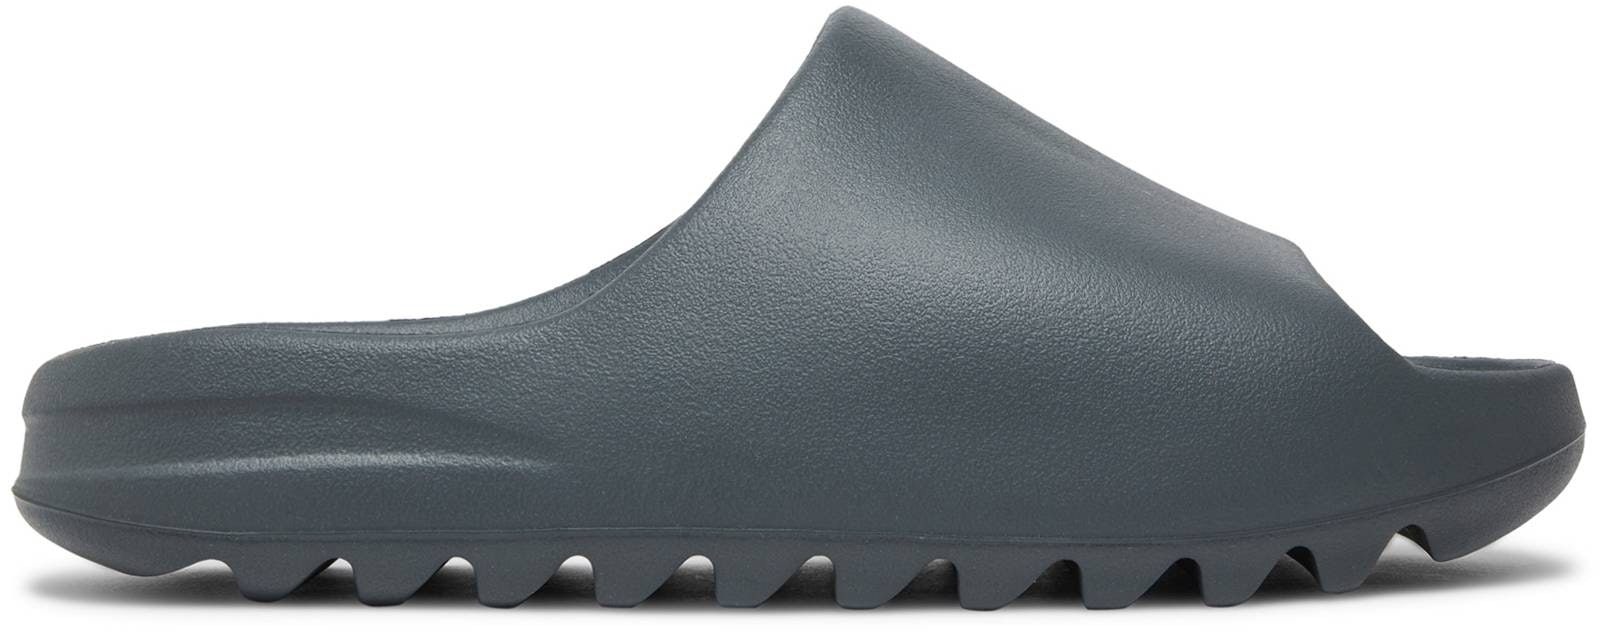 adidas Yeezy Slides 'Slate Grey' ID2350 - ID2350 - Novelship